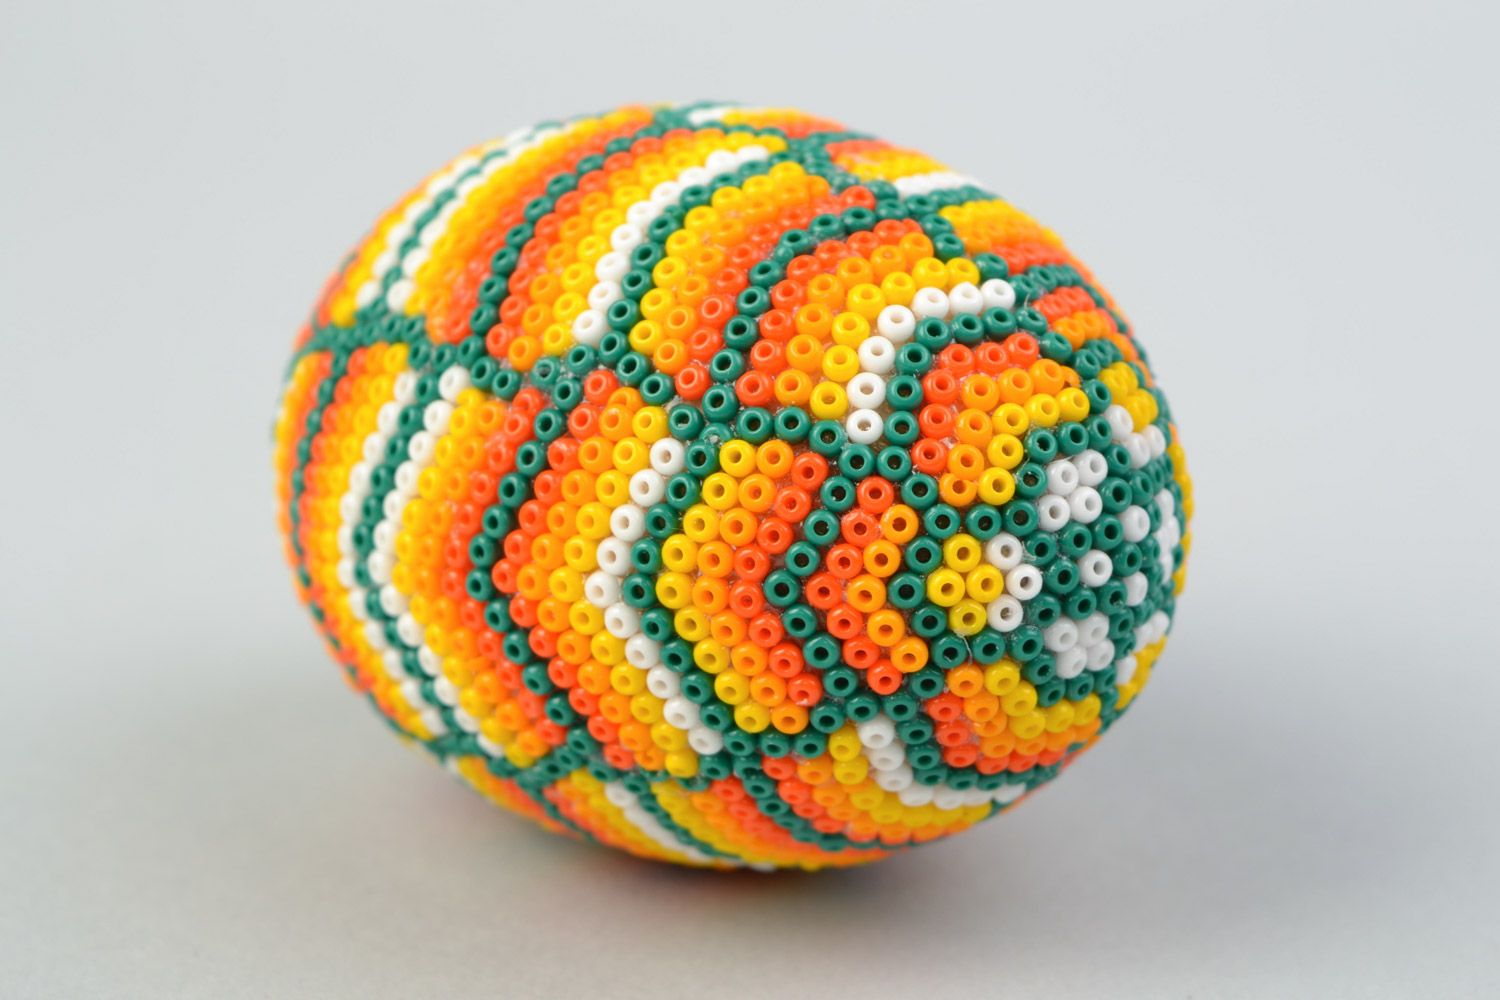 Деревянное яйцо оплетенное бисером в стиле уичоль ручной работы пестрое и яркое фото 3